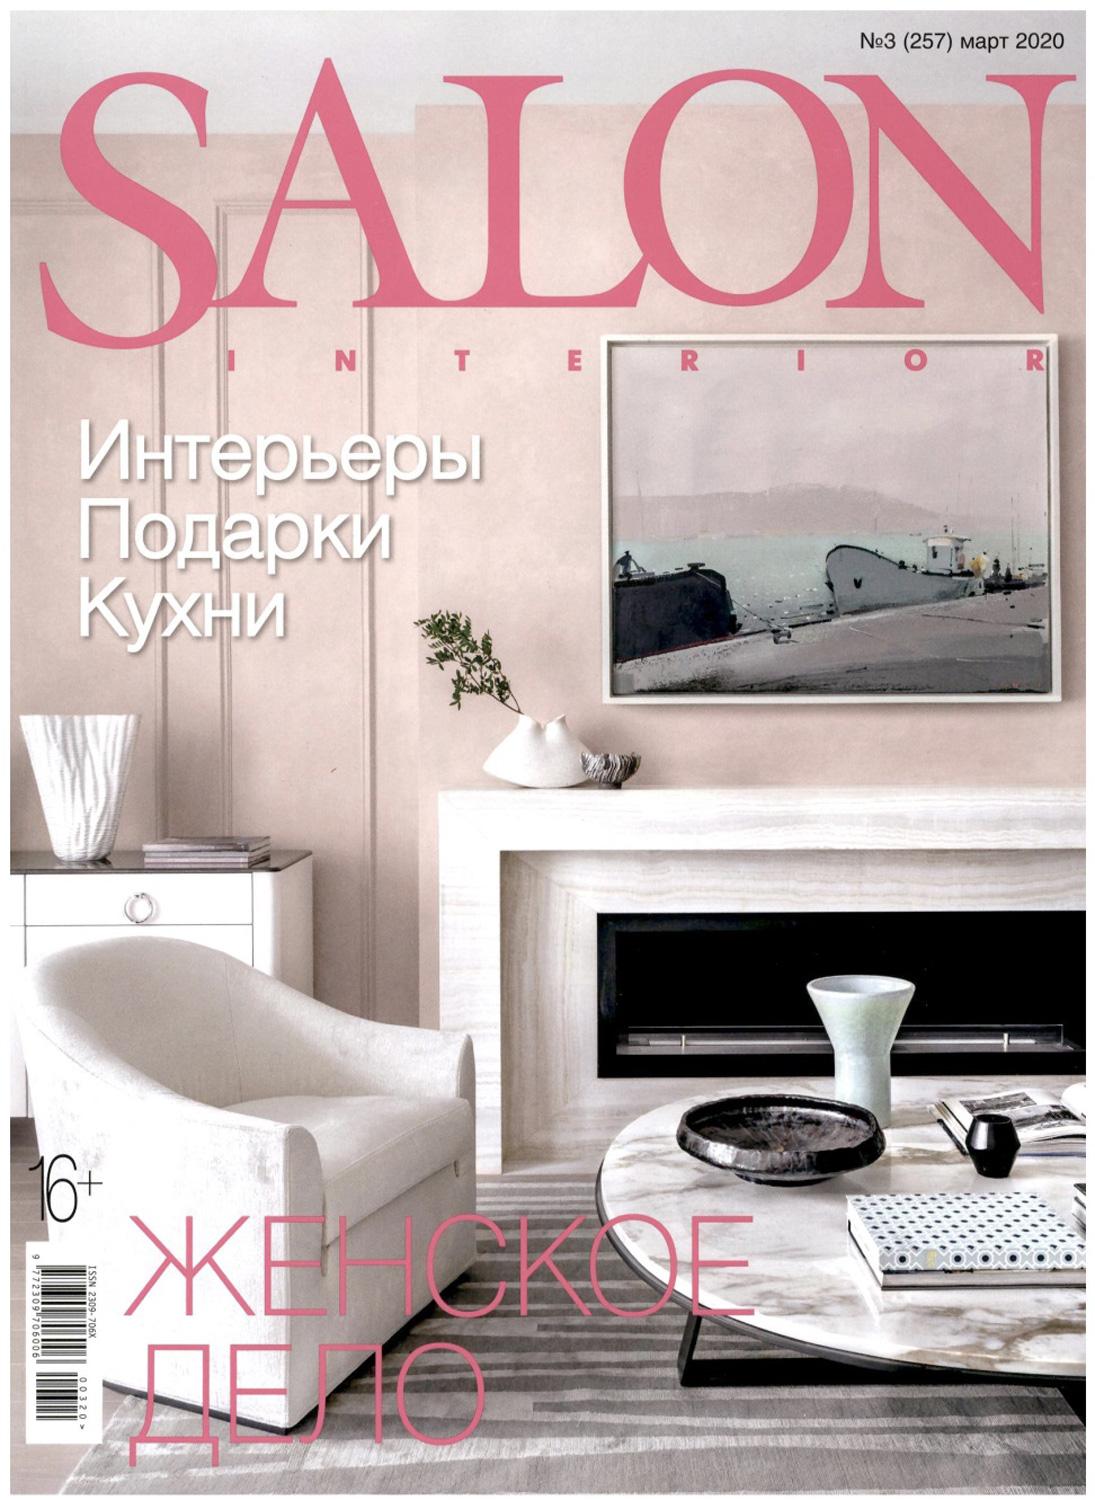 Salon Interior - Russia